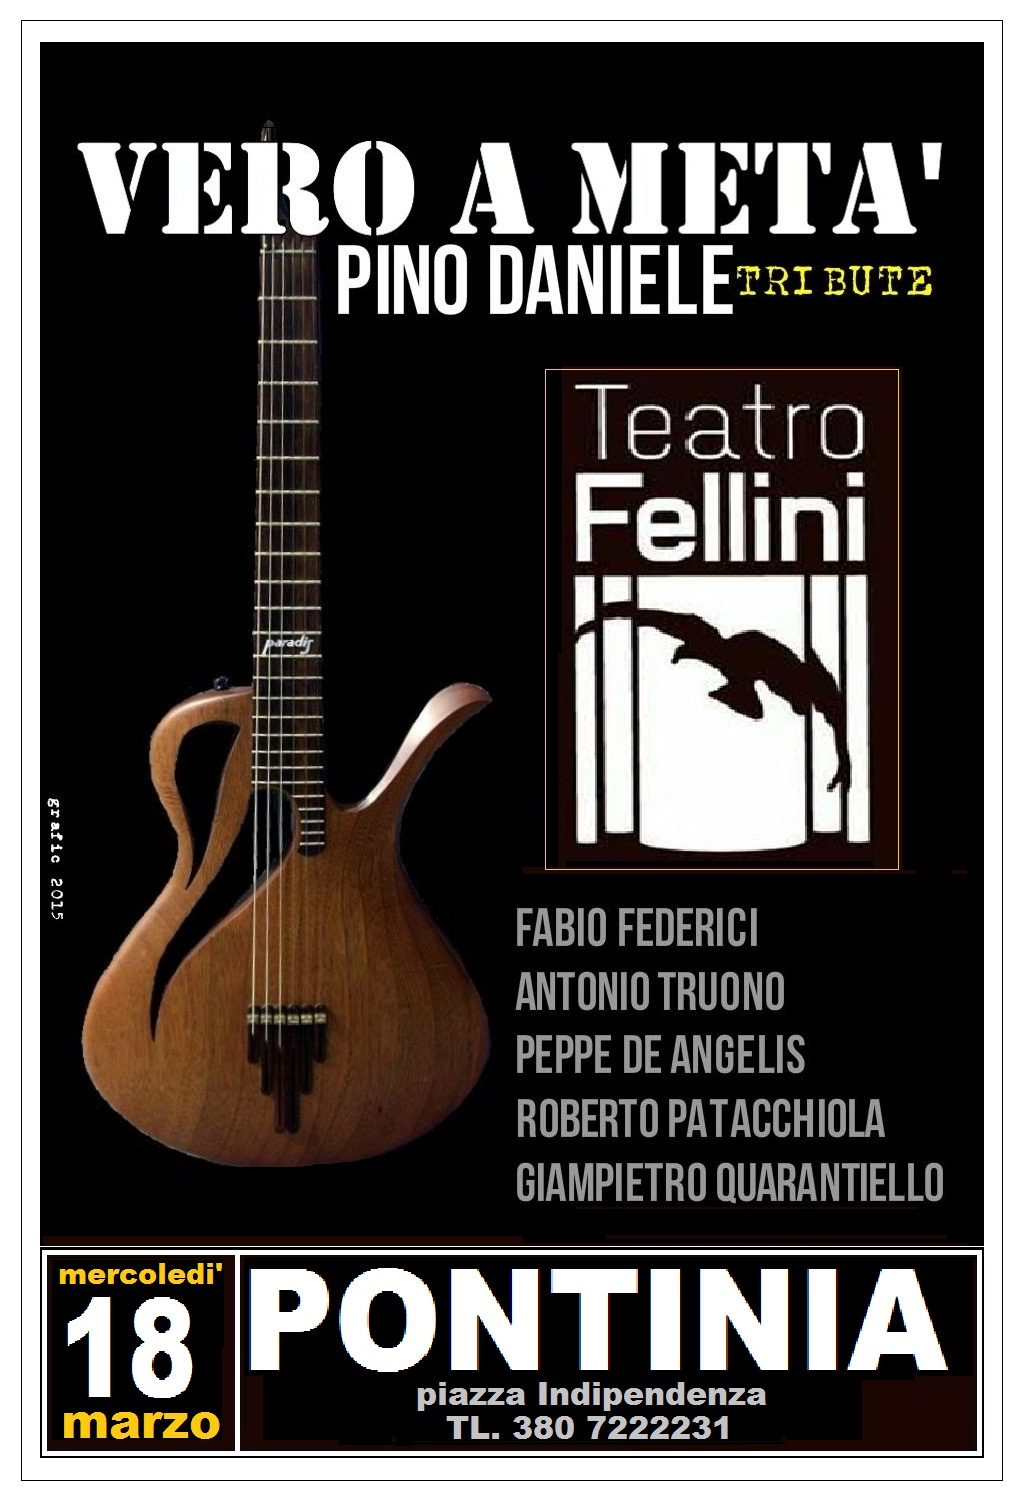 Teatro Fellini: Tributo a Pino Daniele